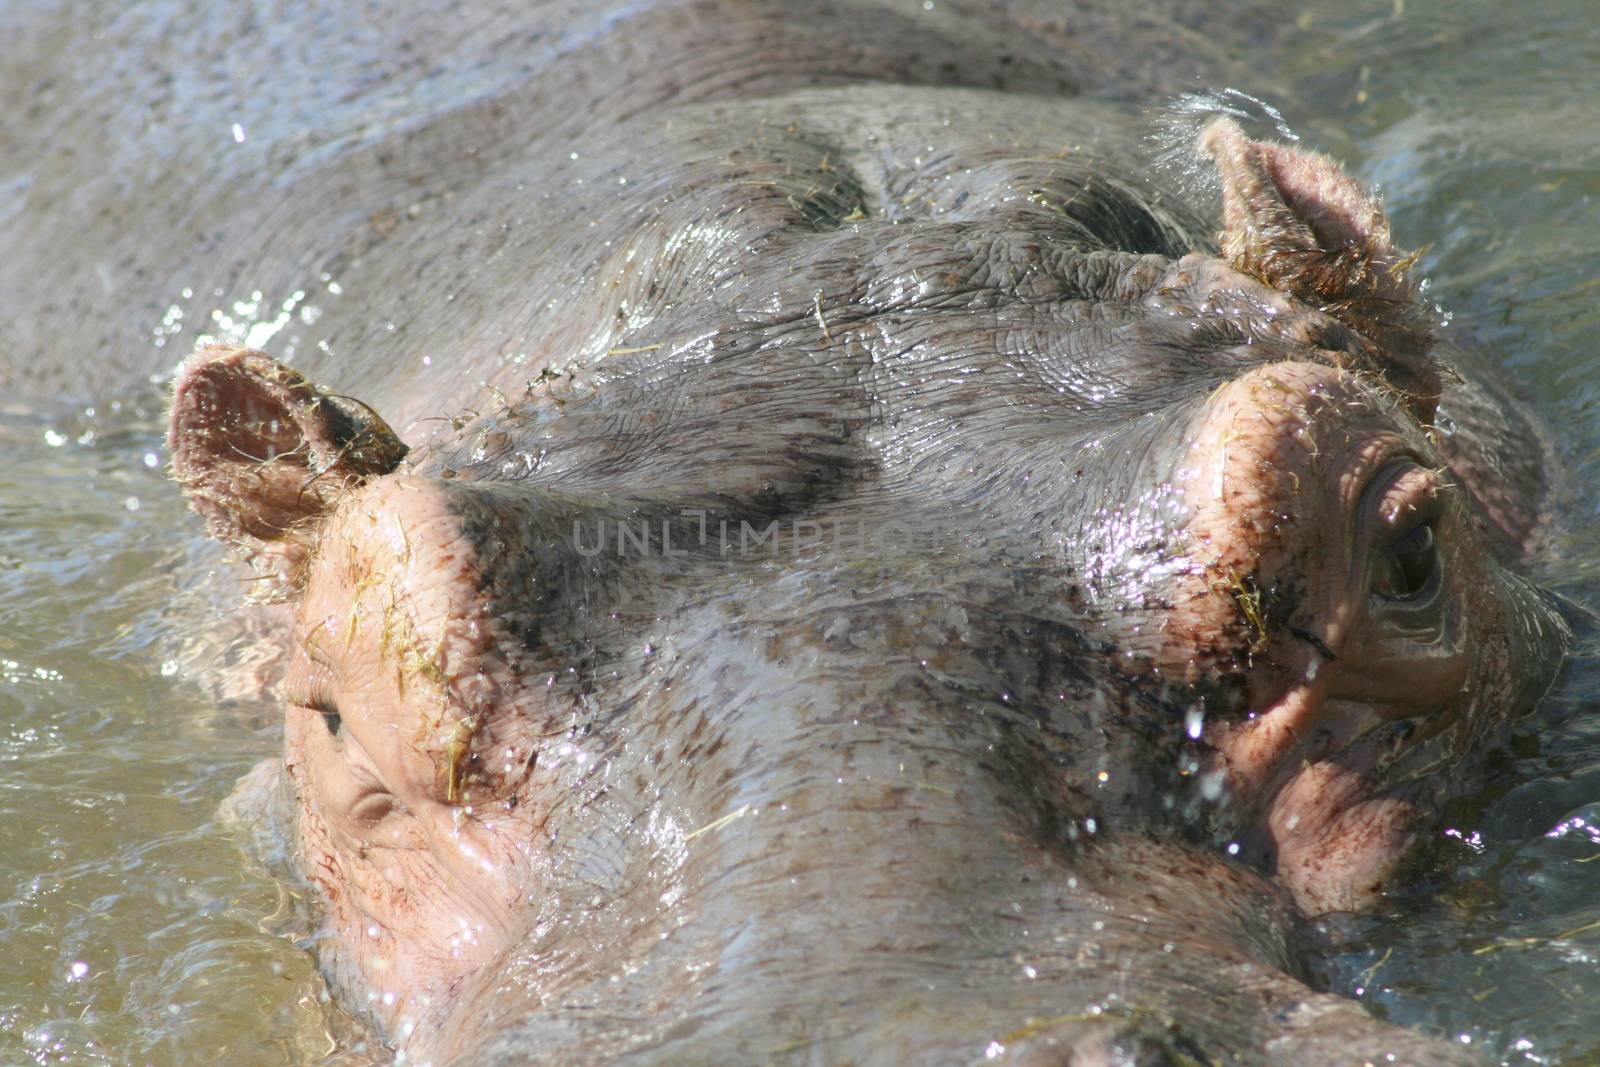 Portrait shot of a hippopotamus in water     Portr�taufnahme eines Flusspferdes im Wasser by hadot